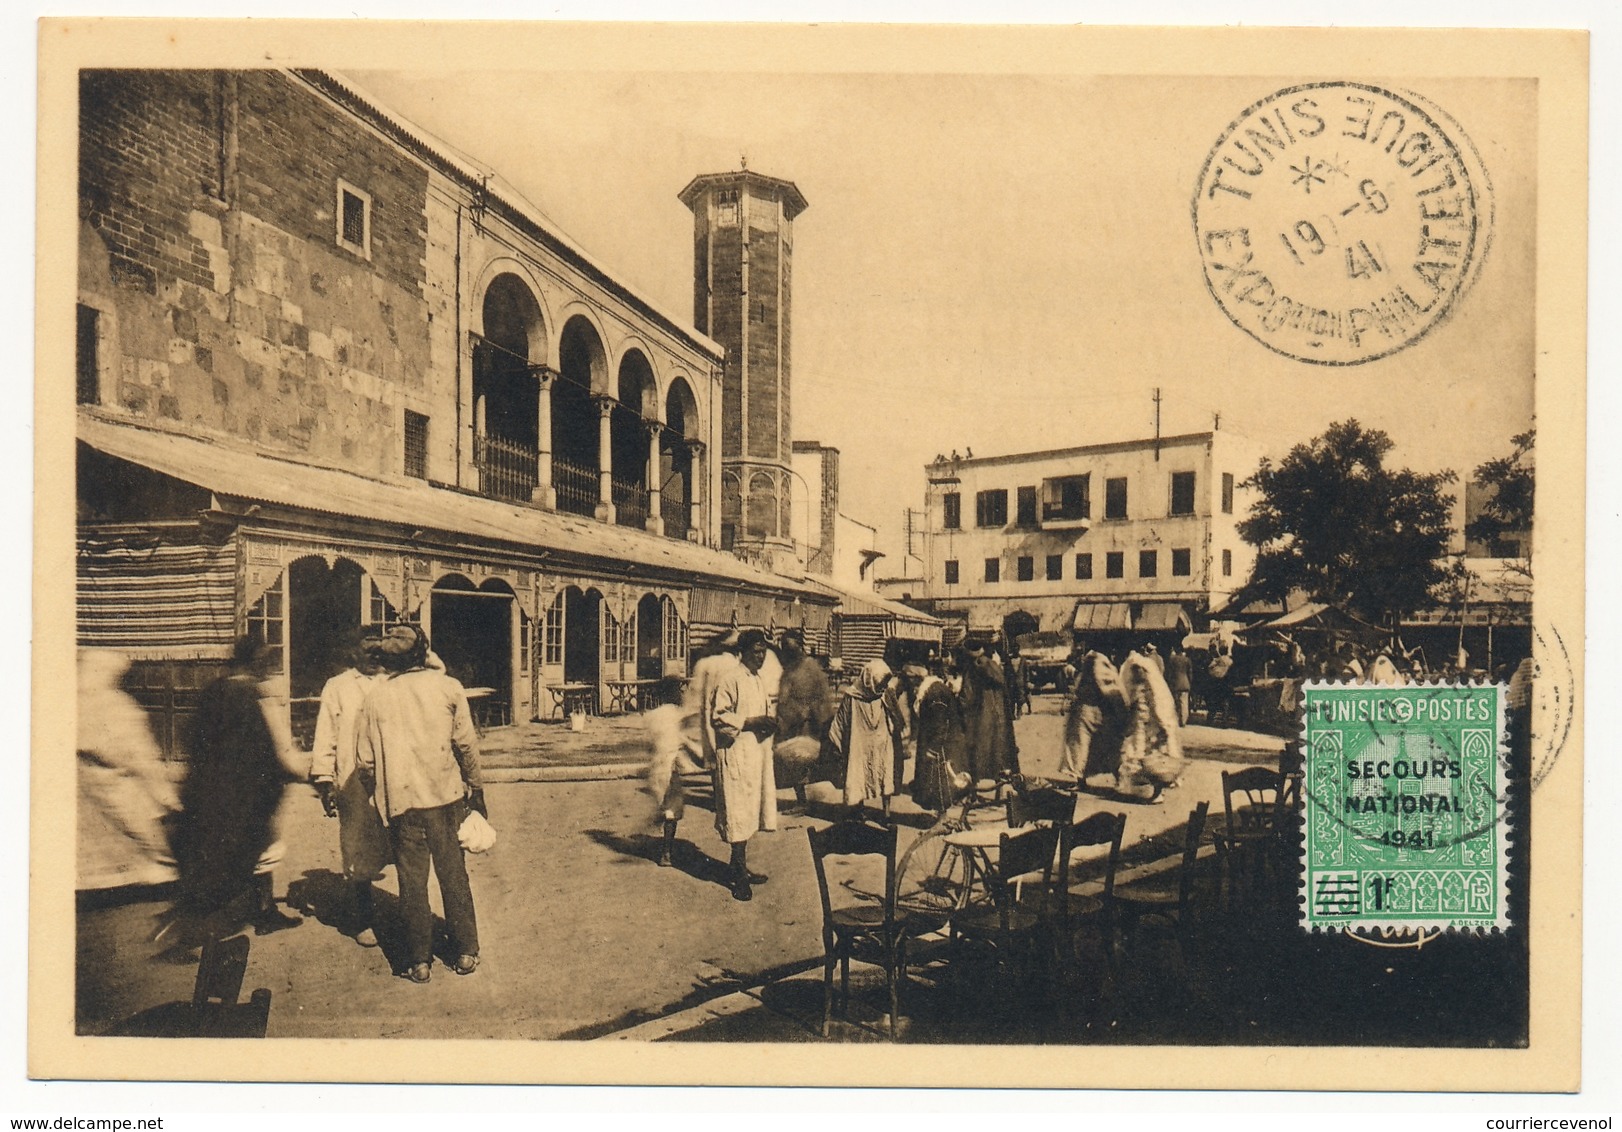 TUNISIE - 4 Cartes maximum - Série Secours National 1941 - Exposition philatélique de Tunis 1941